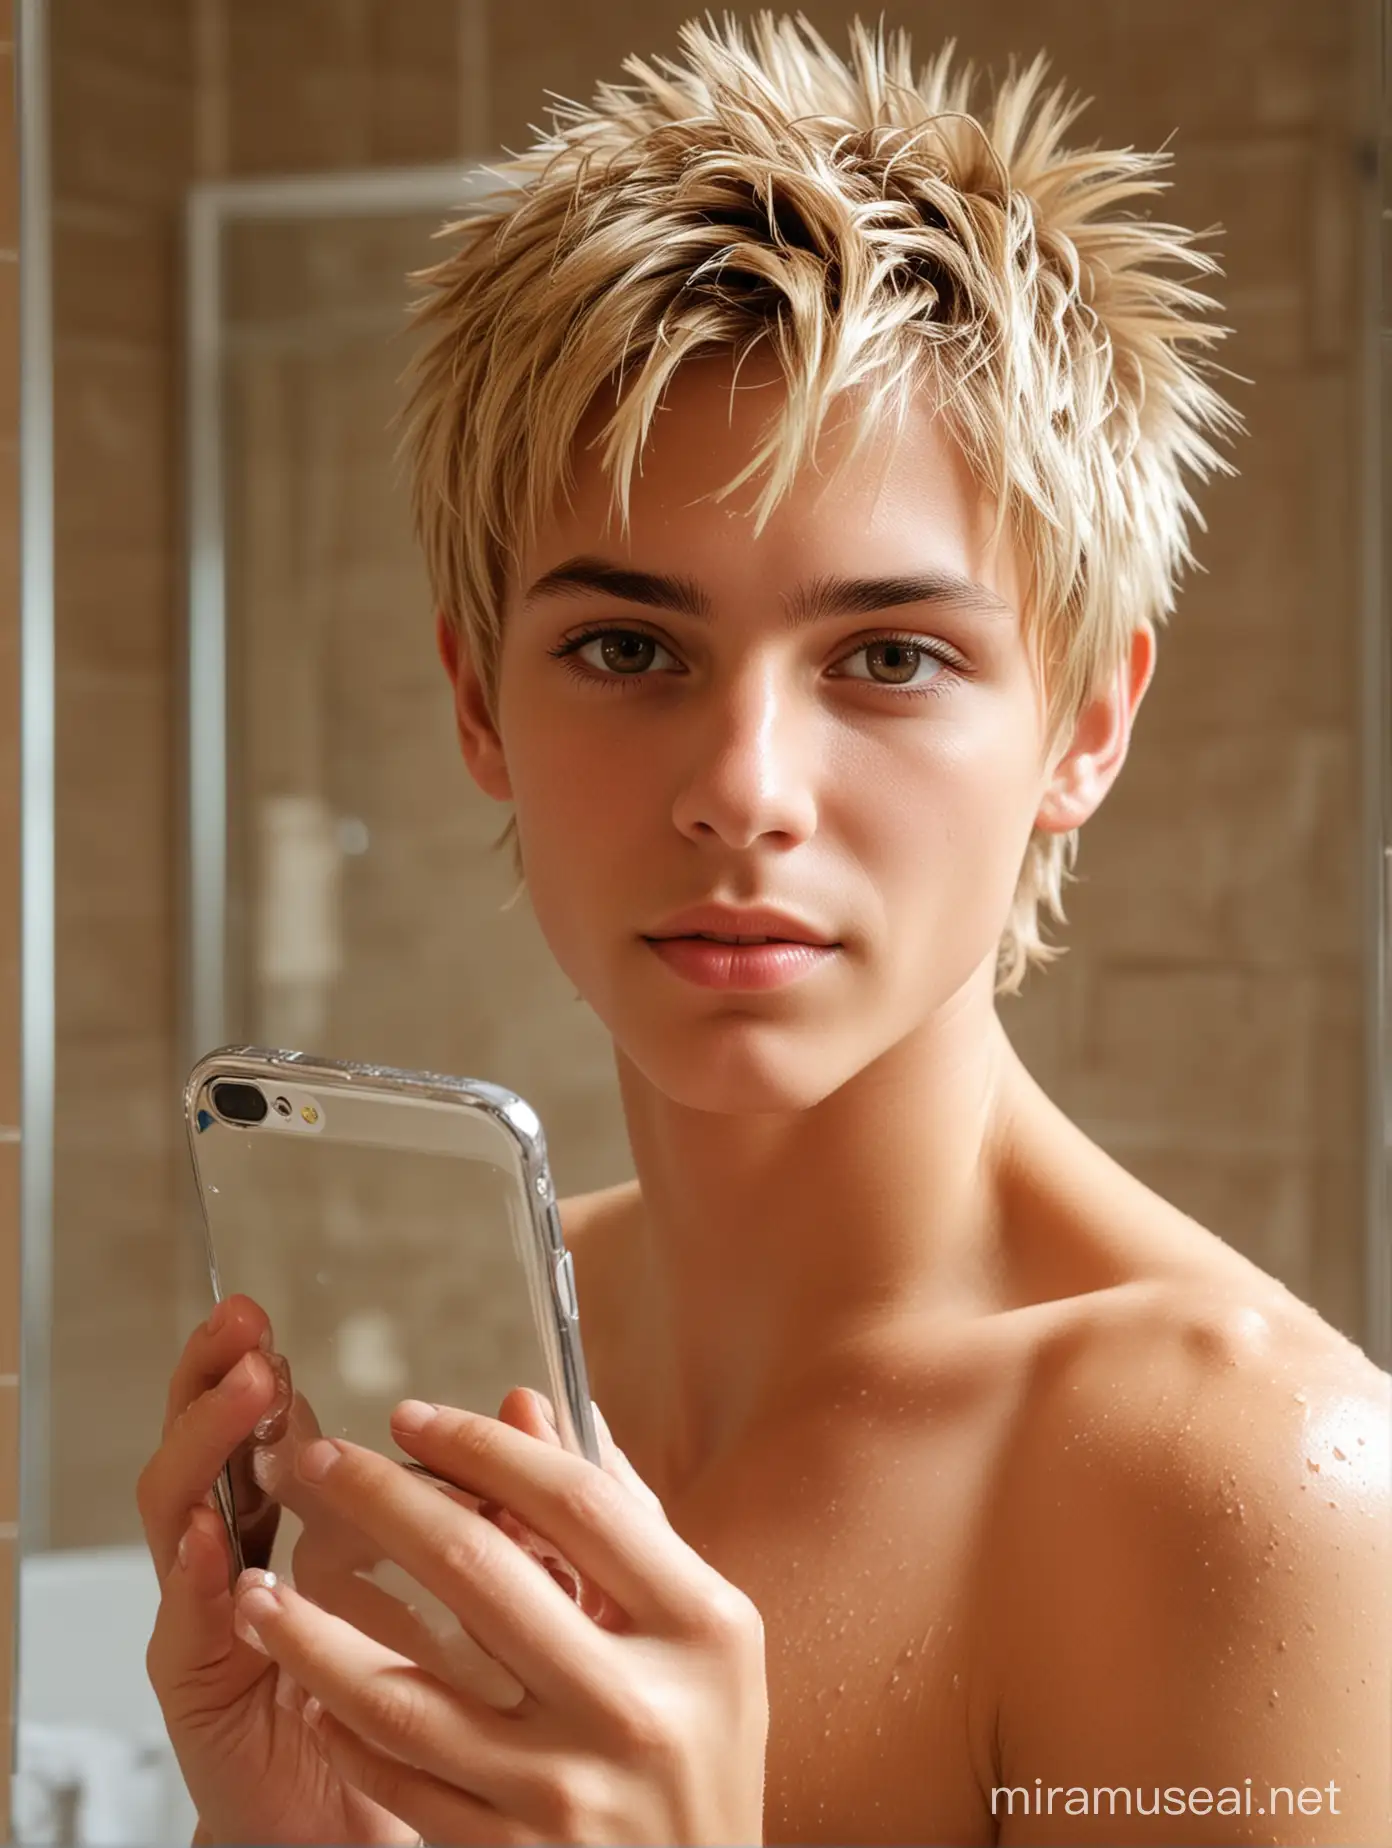 Athletic Blond Teen Taking Selfie in Bathroom Mirror